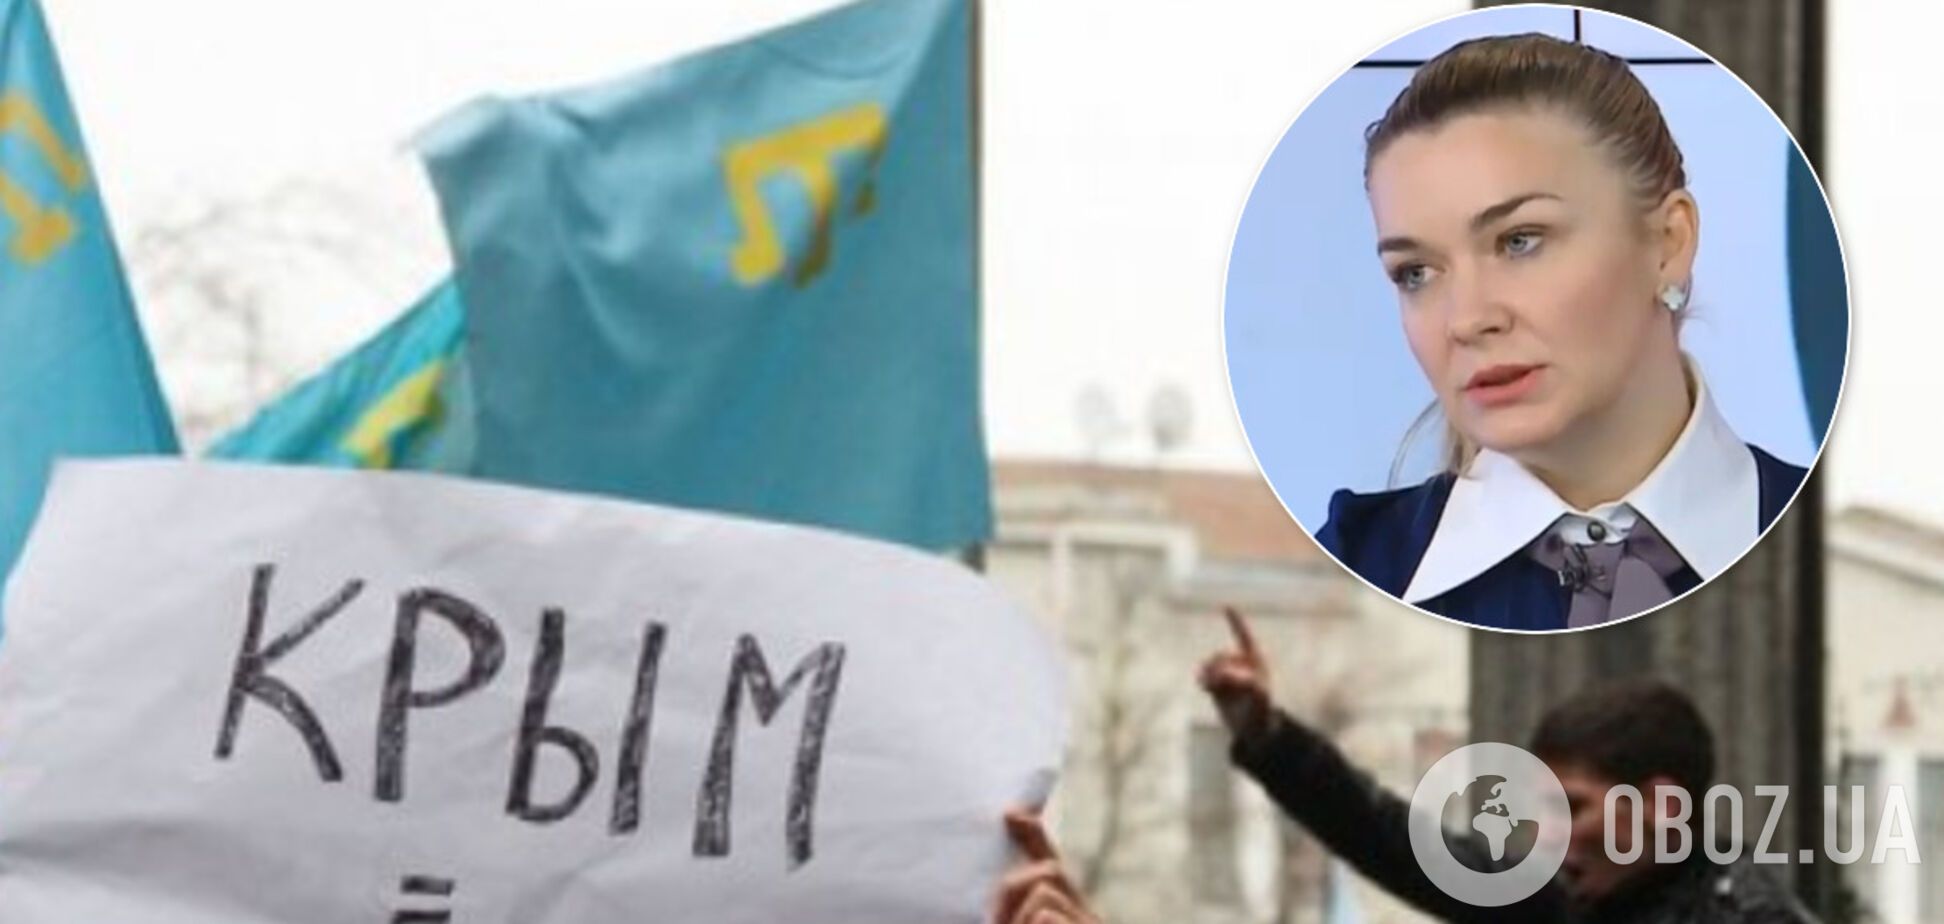 'Слуга народа' предложила провести выборы в Крыму на границе